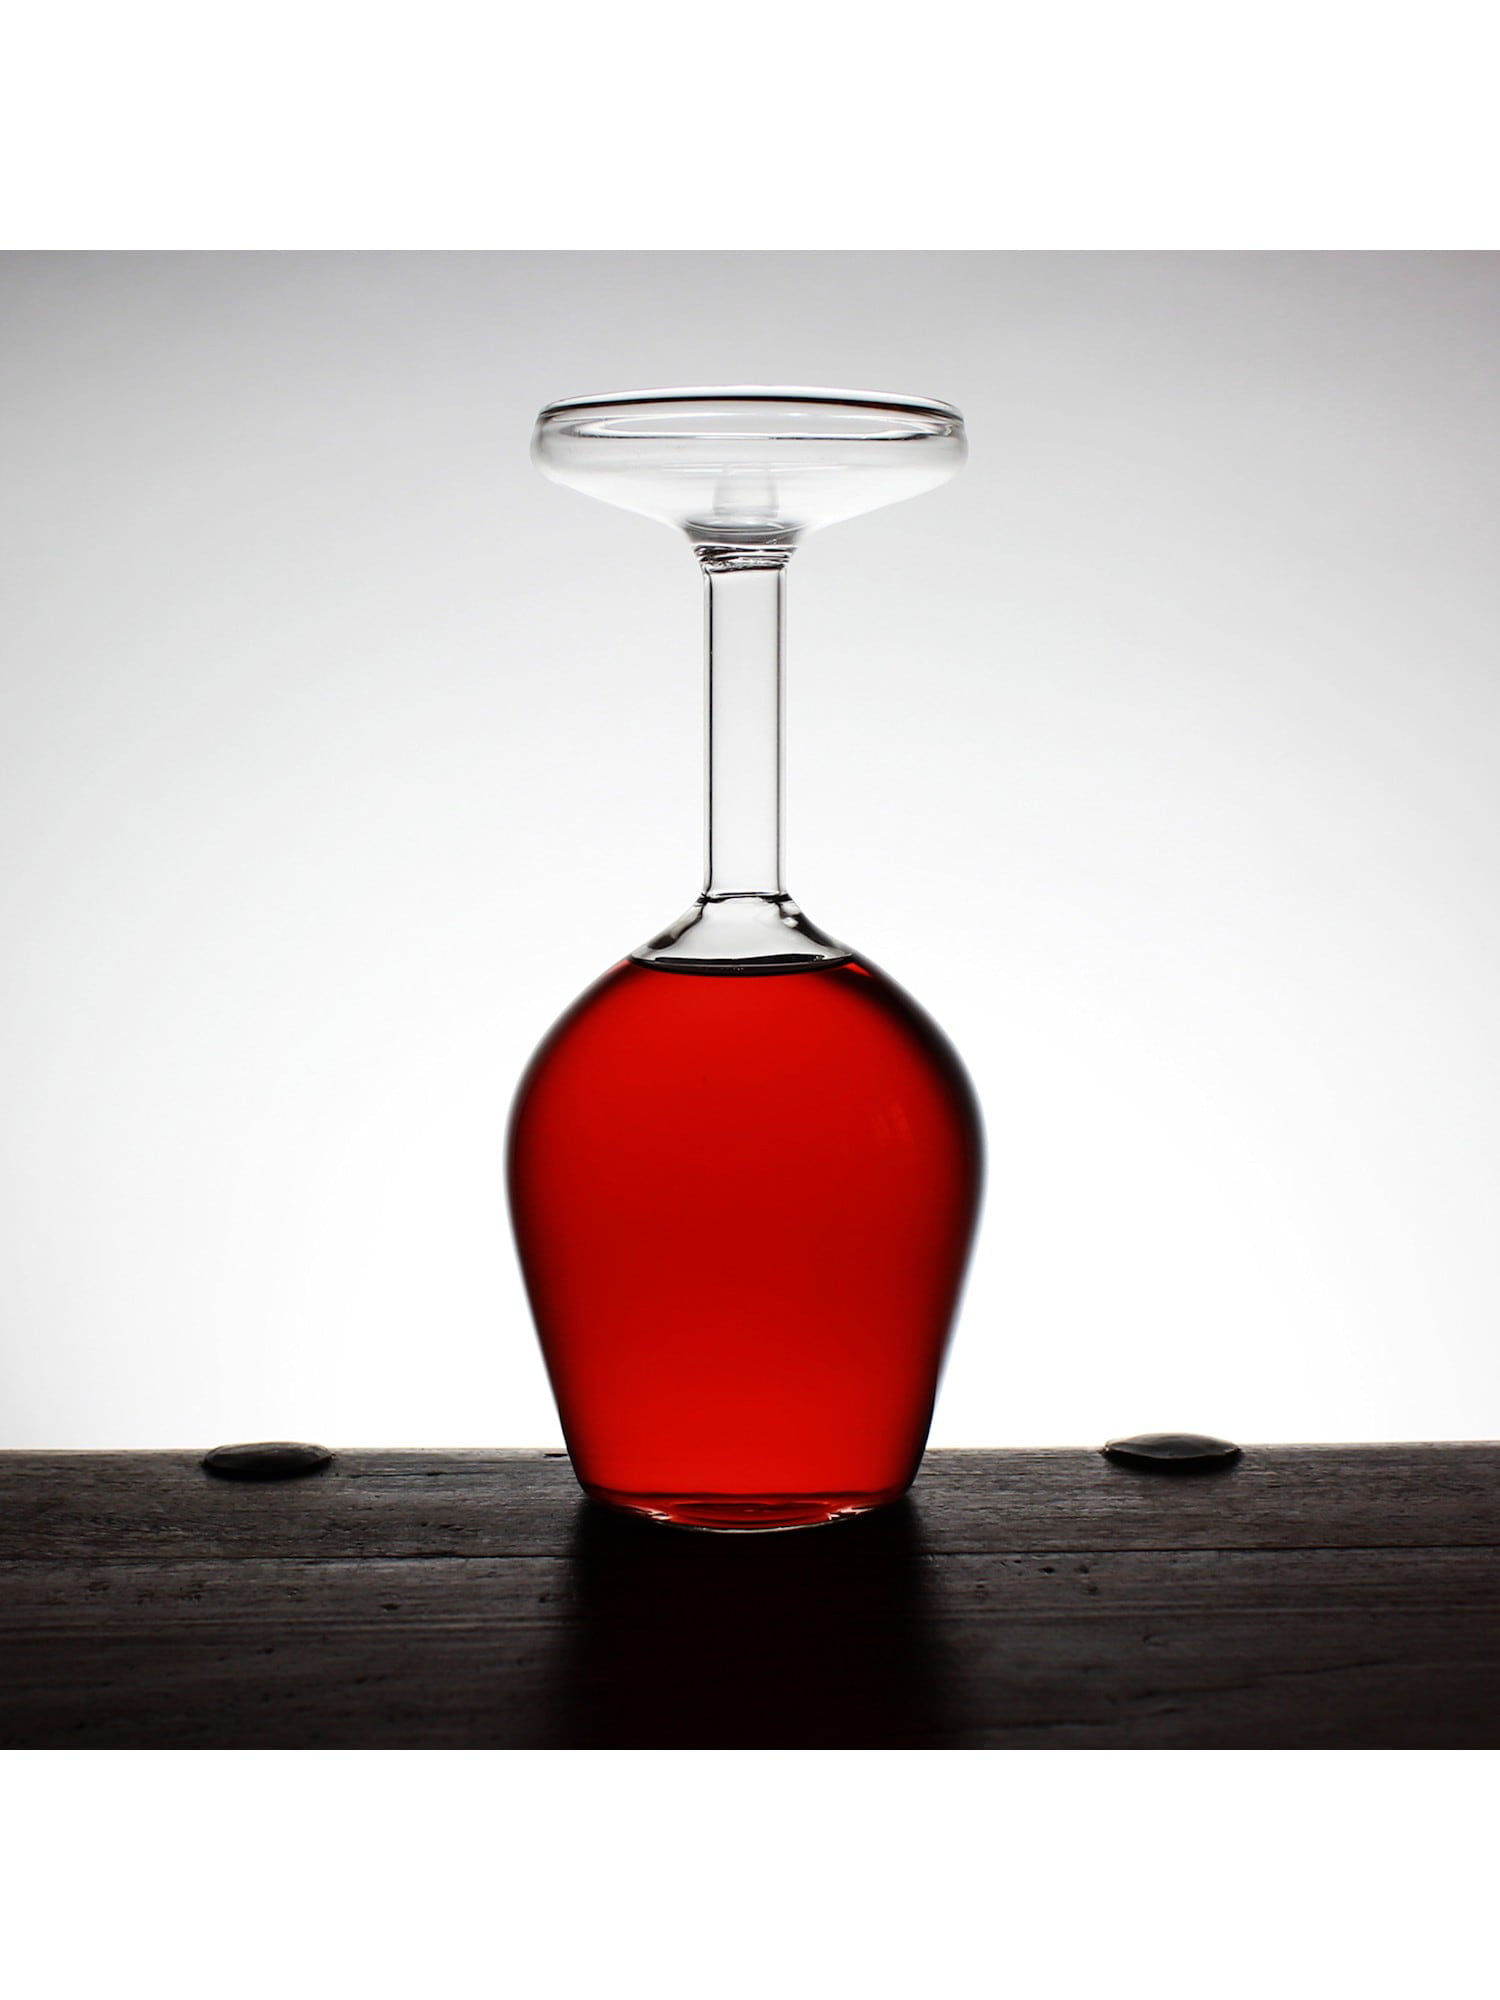 AddLiquid Extra Long Stemmed Wine Glass - 12 Tall Stemware